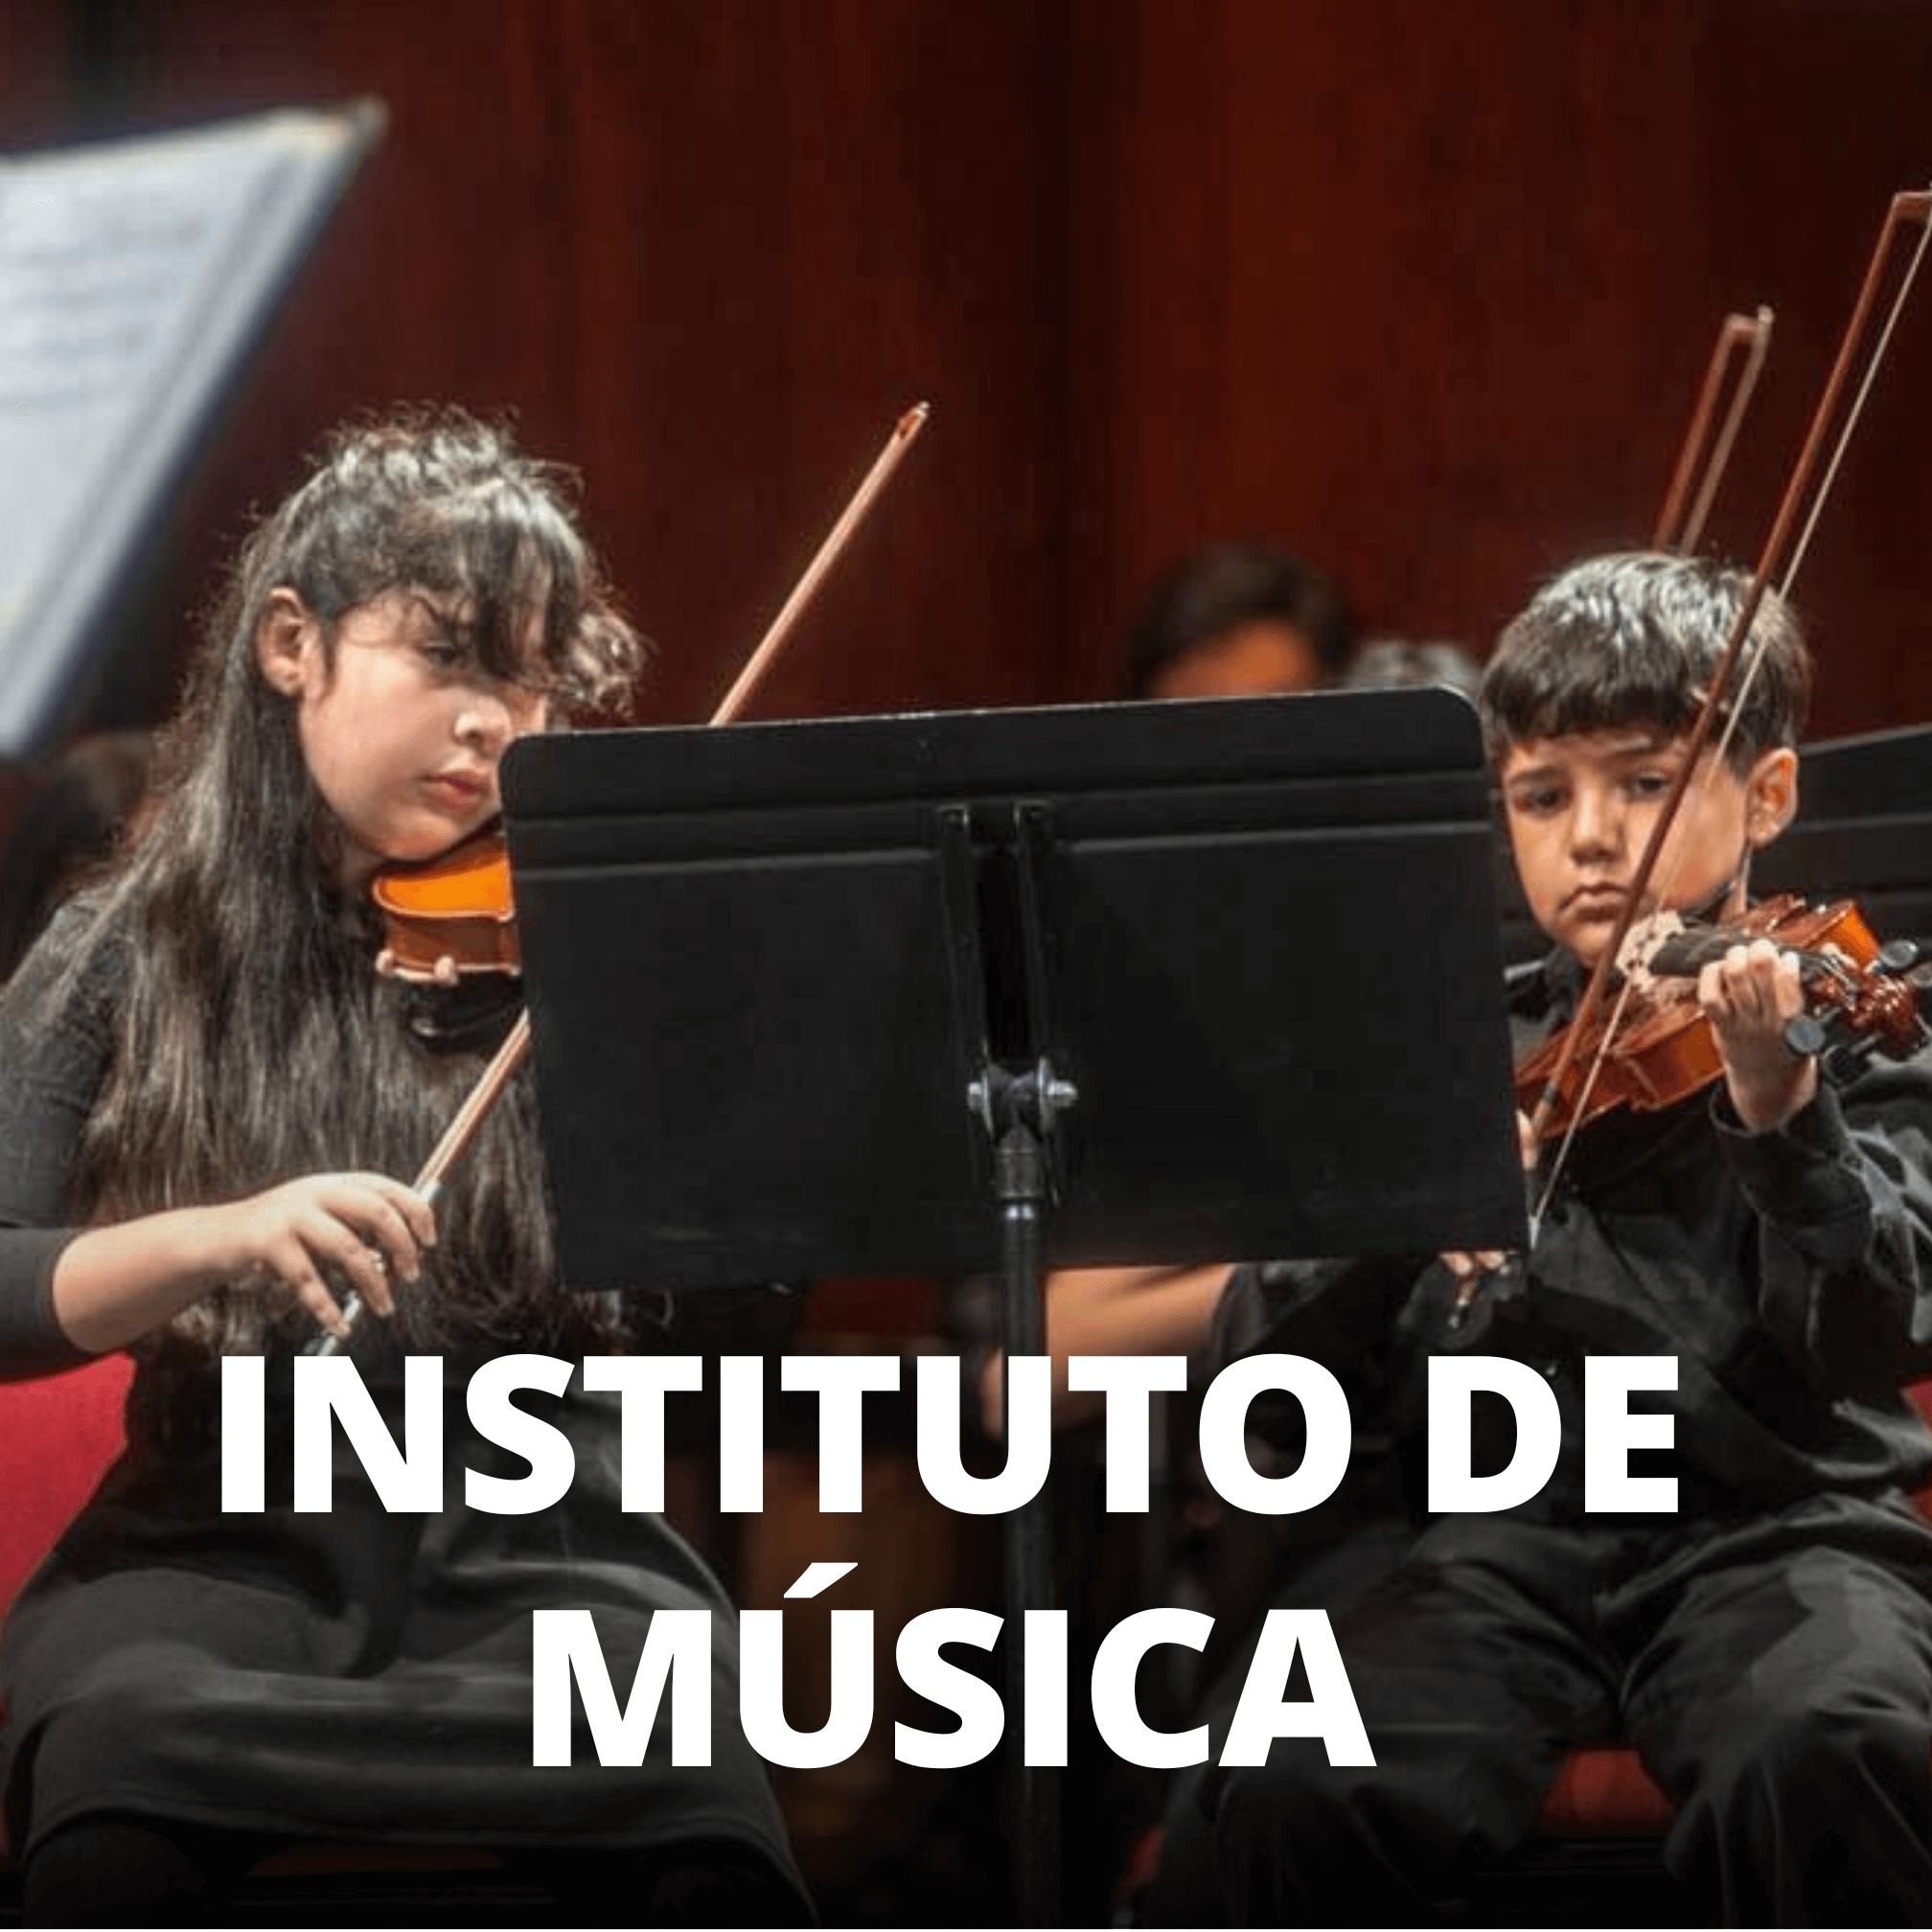 Un niño y una niña tocando violín frente a un atril. Al centro se lee "Instituto de Música"